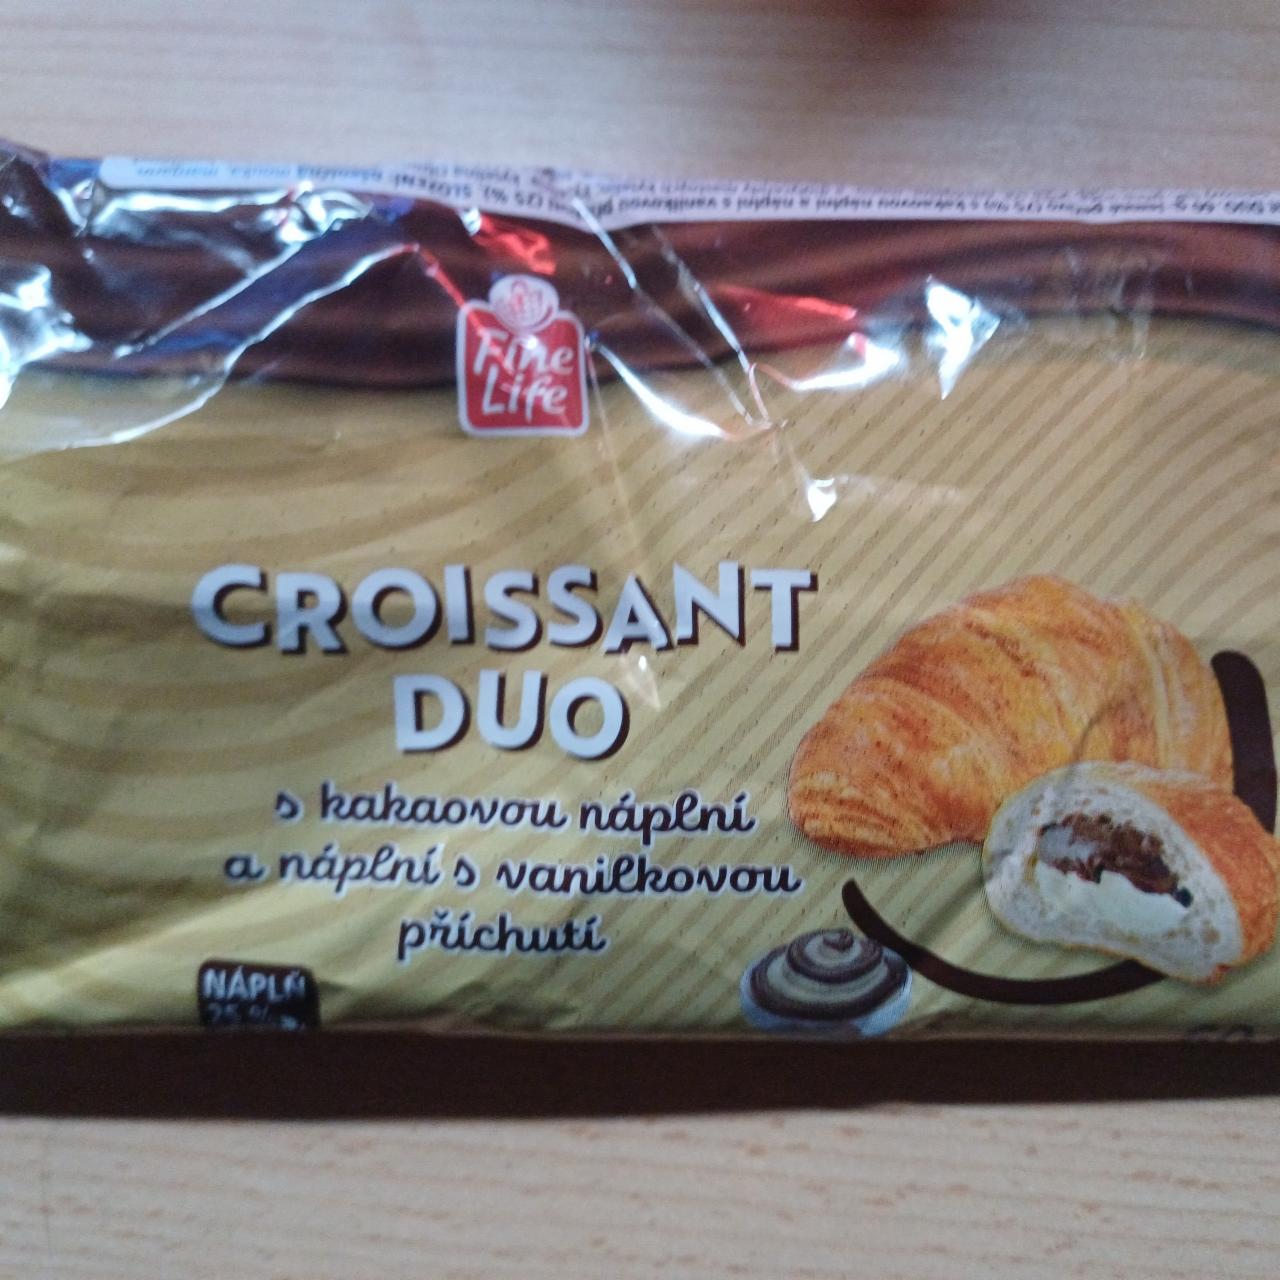 Fotografie - Croissant Duo s kakaovou náplní a náplní s vanilkovou příchutí Fine Life